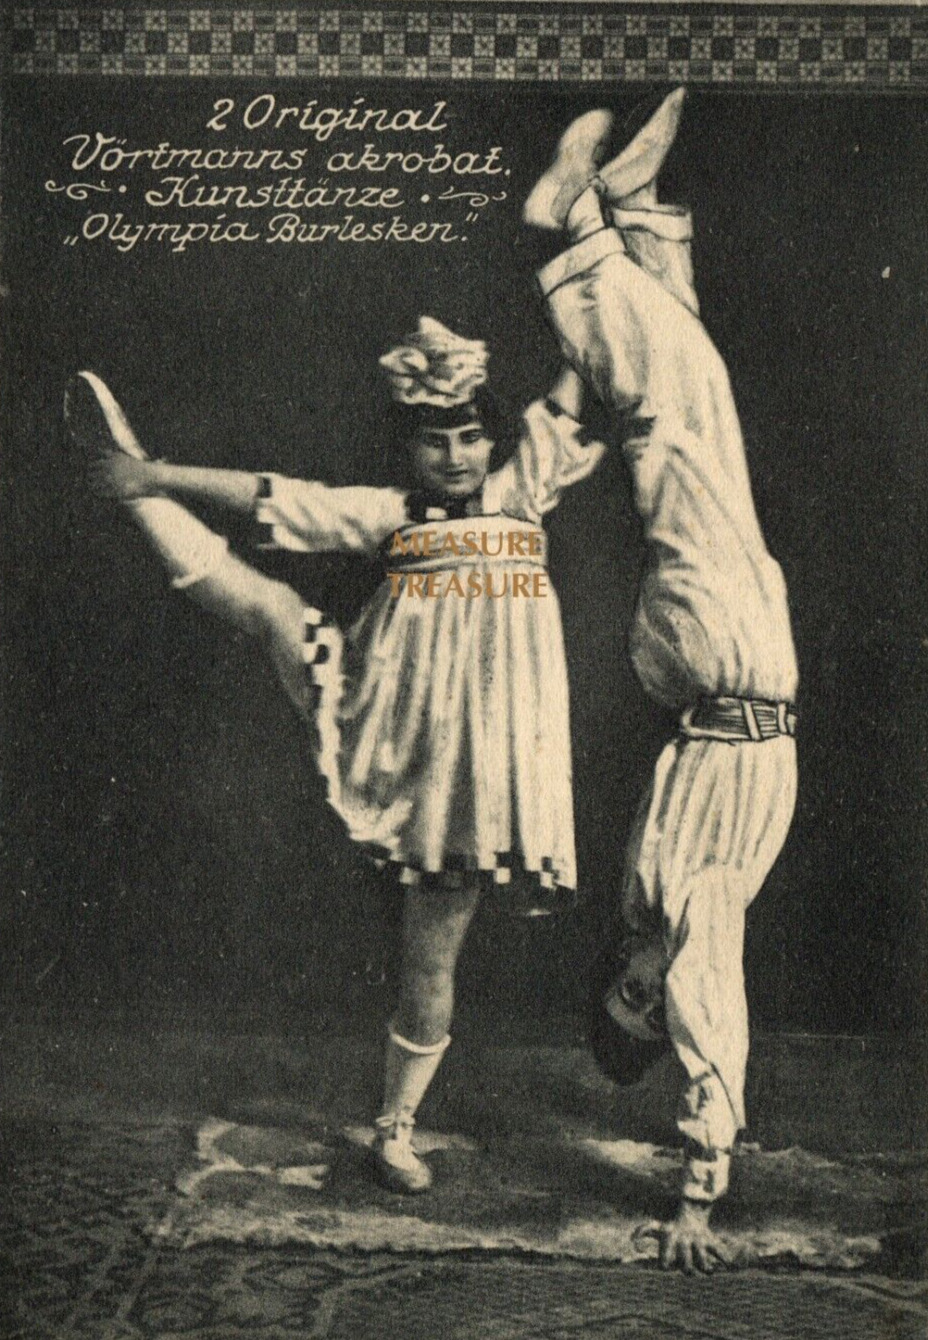 C.1910 VÖRTMANN'S ACROBATS OLYMPIA BURLESQUE CIRCUS SIDESHOW DANCE Postcard PS